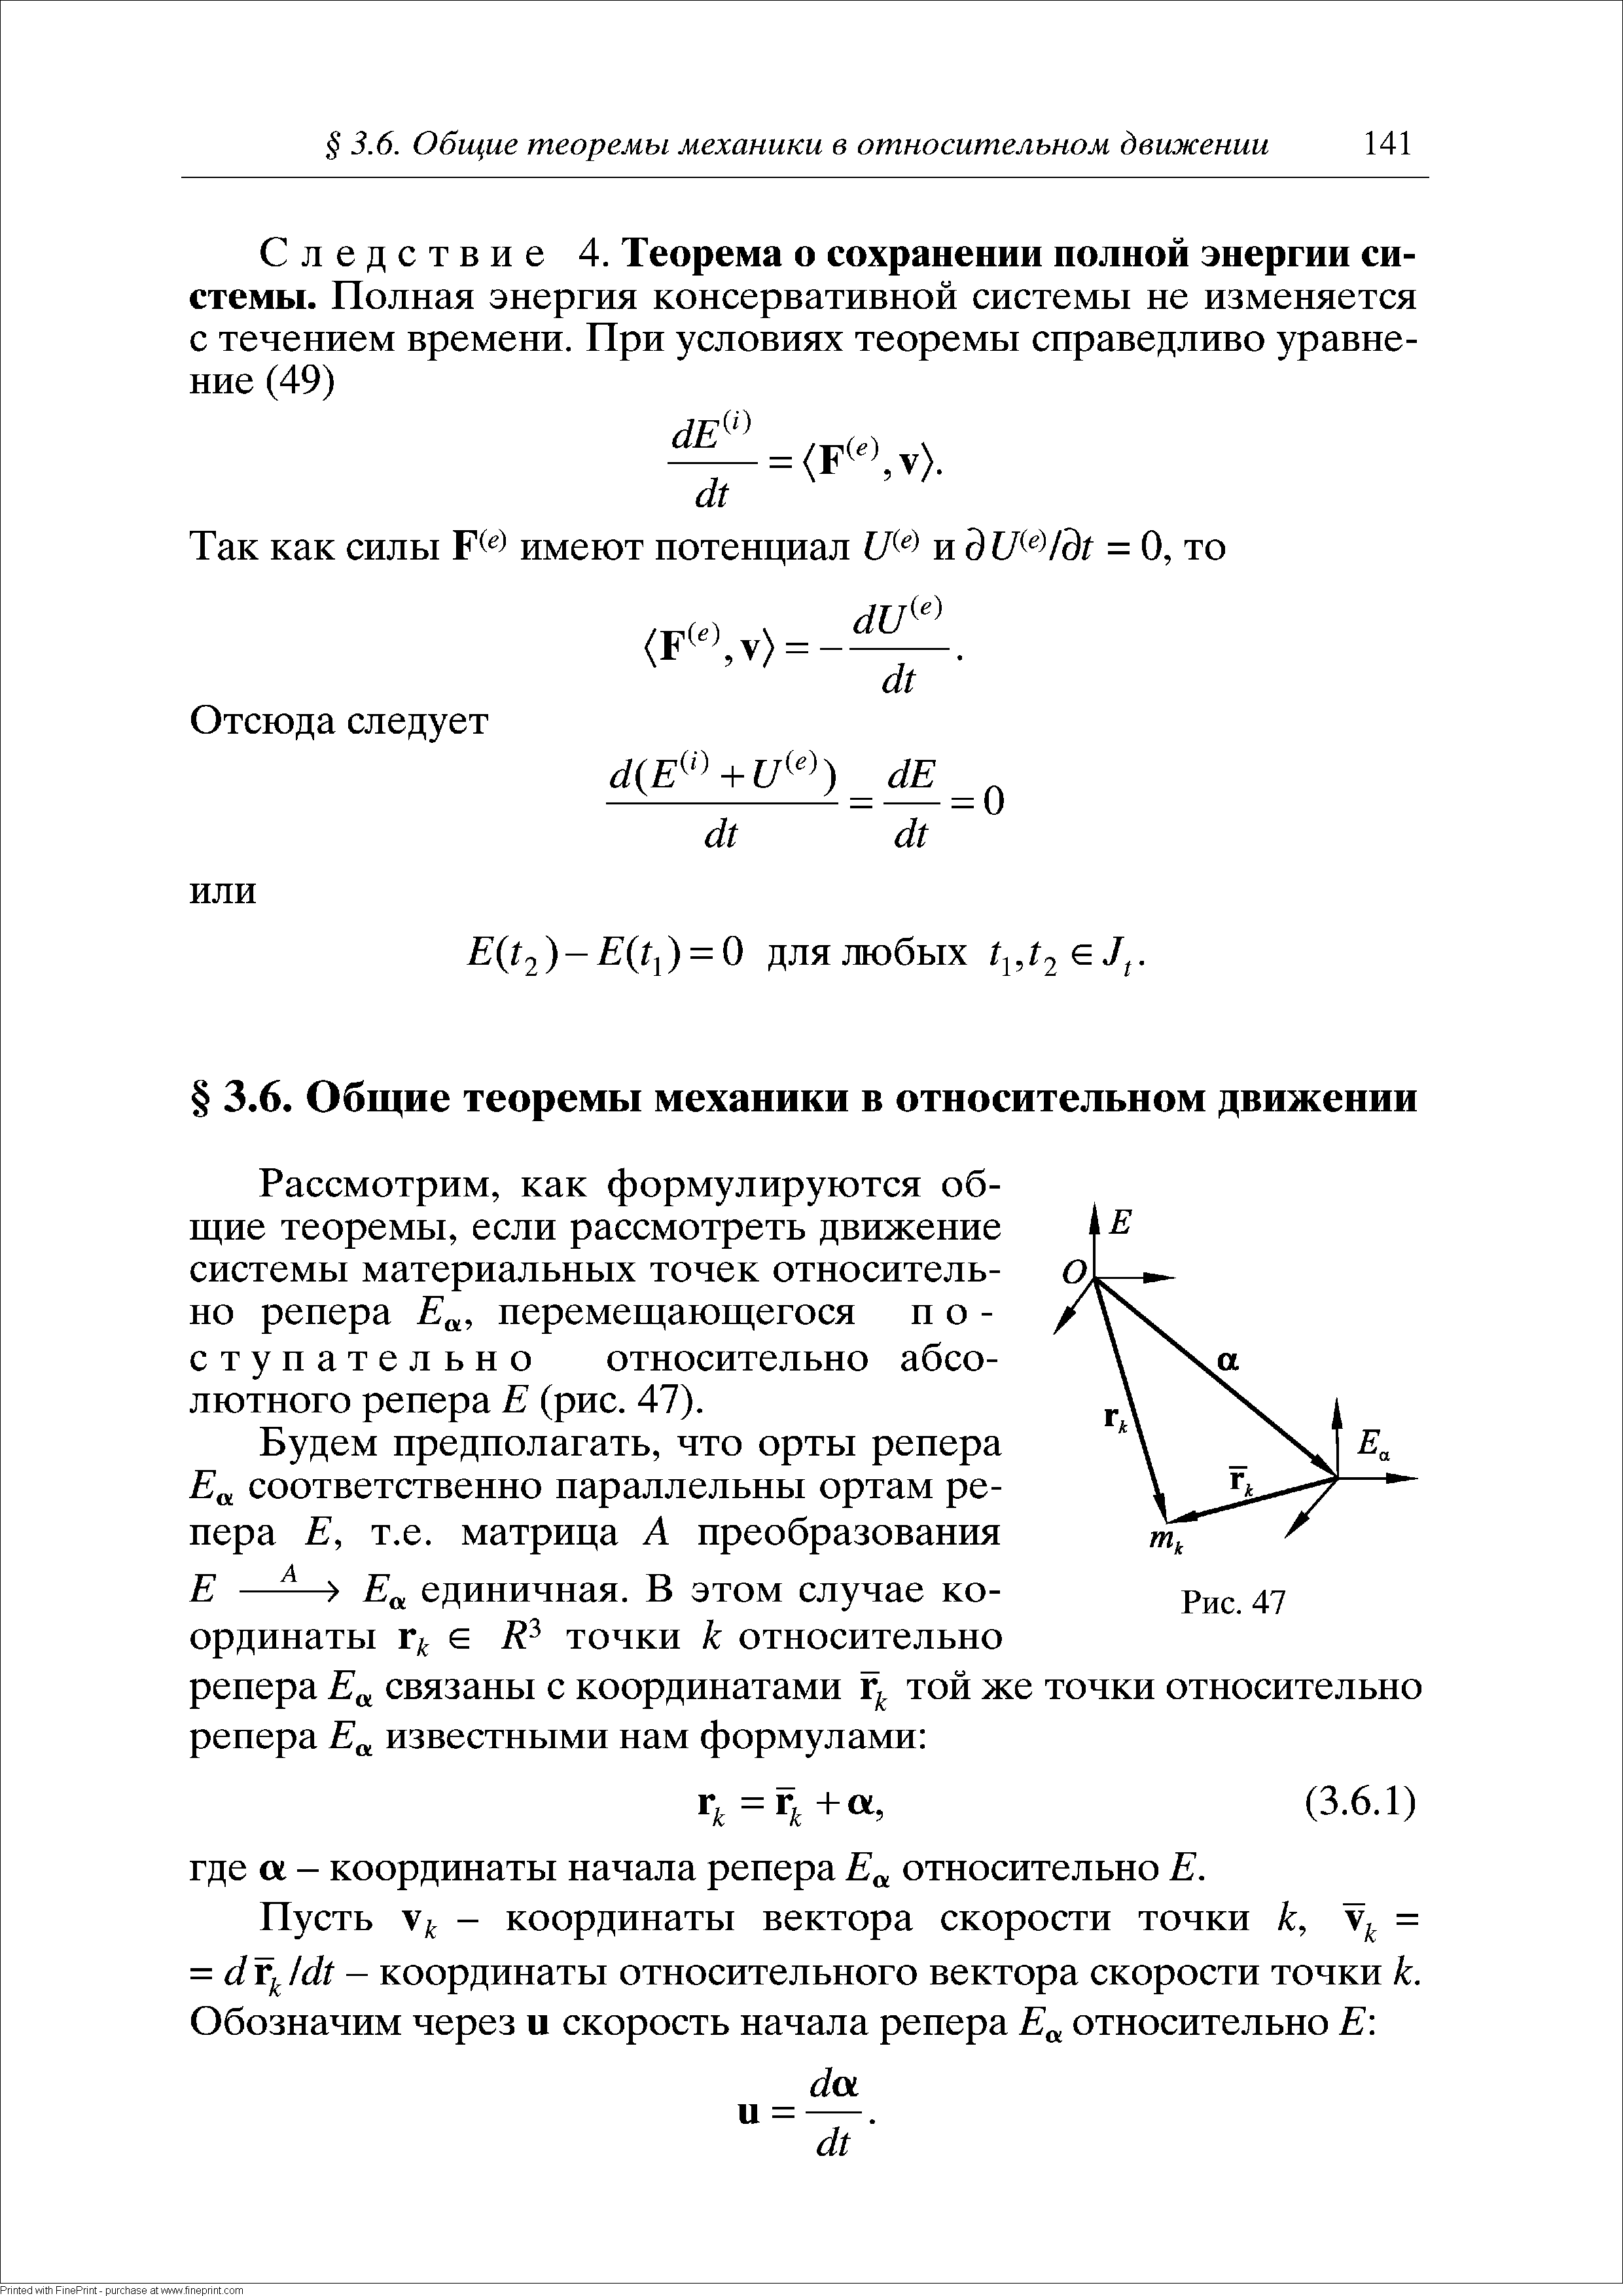 Рассмотрим, как формулируются общие теоремы, если рассмотреть движение системы материальных точек относительно репера Е , перемещающегося поступательно относительно абсолютного репера Е (рис. 47).
